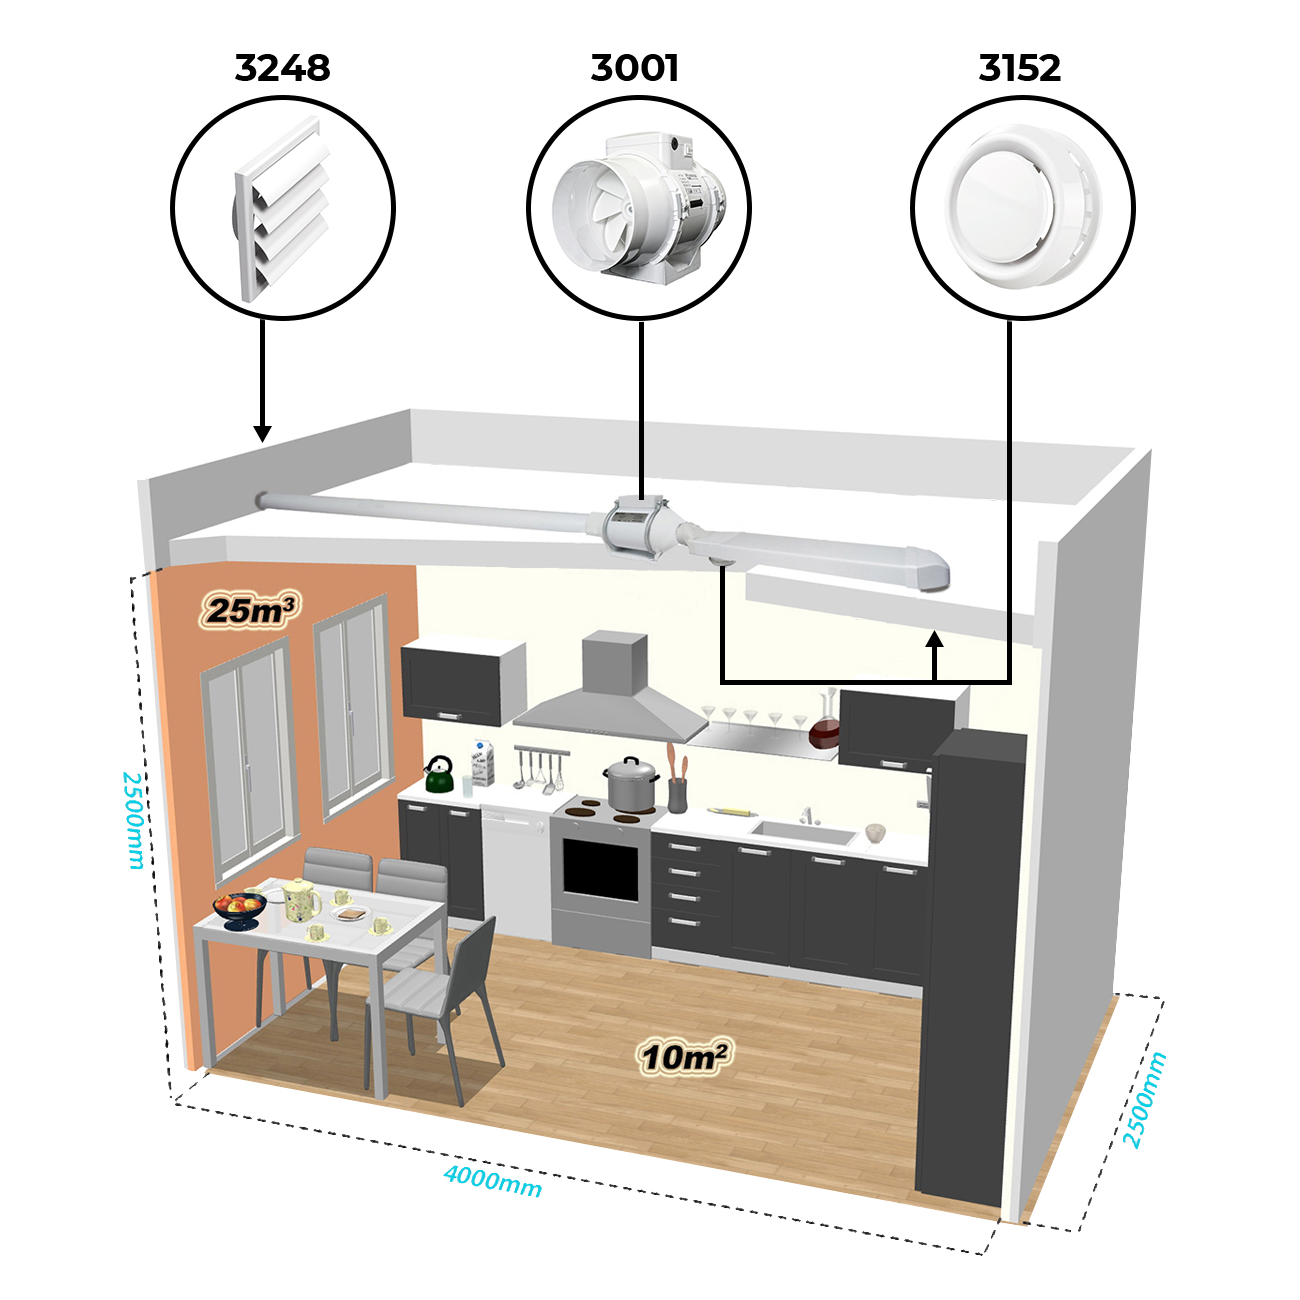 Příklad instalace vzduchotechniky v kuchyni pomocí potrubního ventilátoru Dalap AP